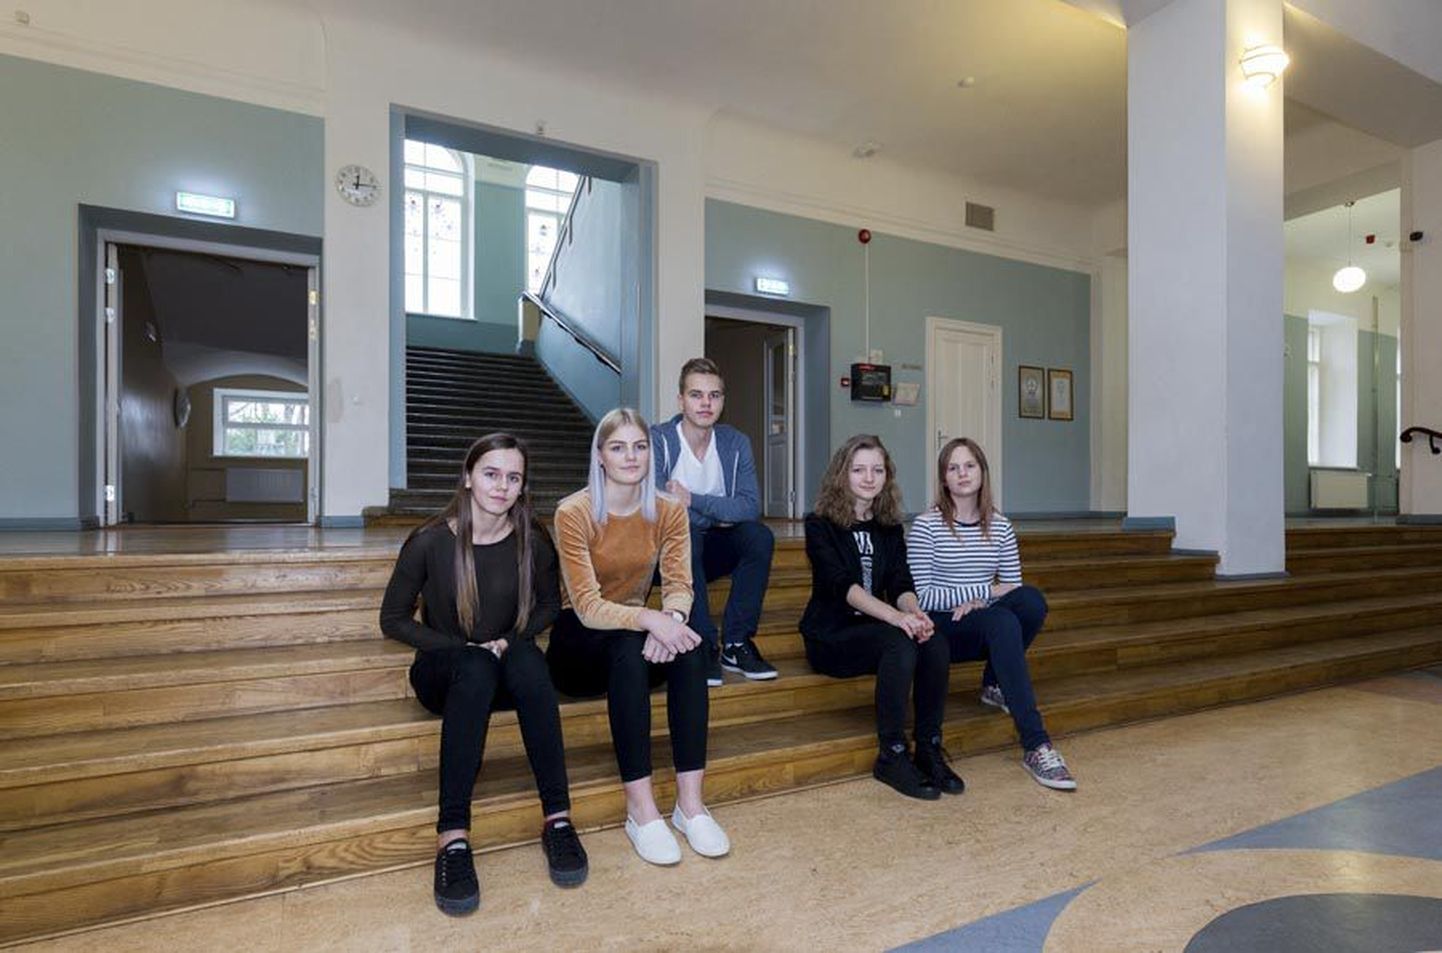 Kesklinna koolist läks vahetusnädalale kuus õpilast, vastu võtsid nad teistest koolidest viis huvilist. Pildil vasakult: Ilona Tasane, Meeri-Lii Kaseoja, Martin Holtsmann, Nora Viikmaa ja Liisa Ikla.